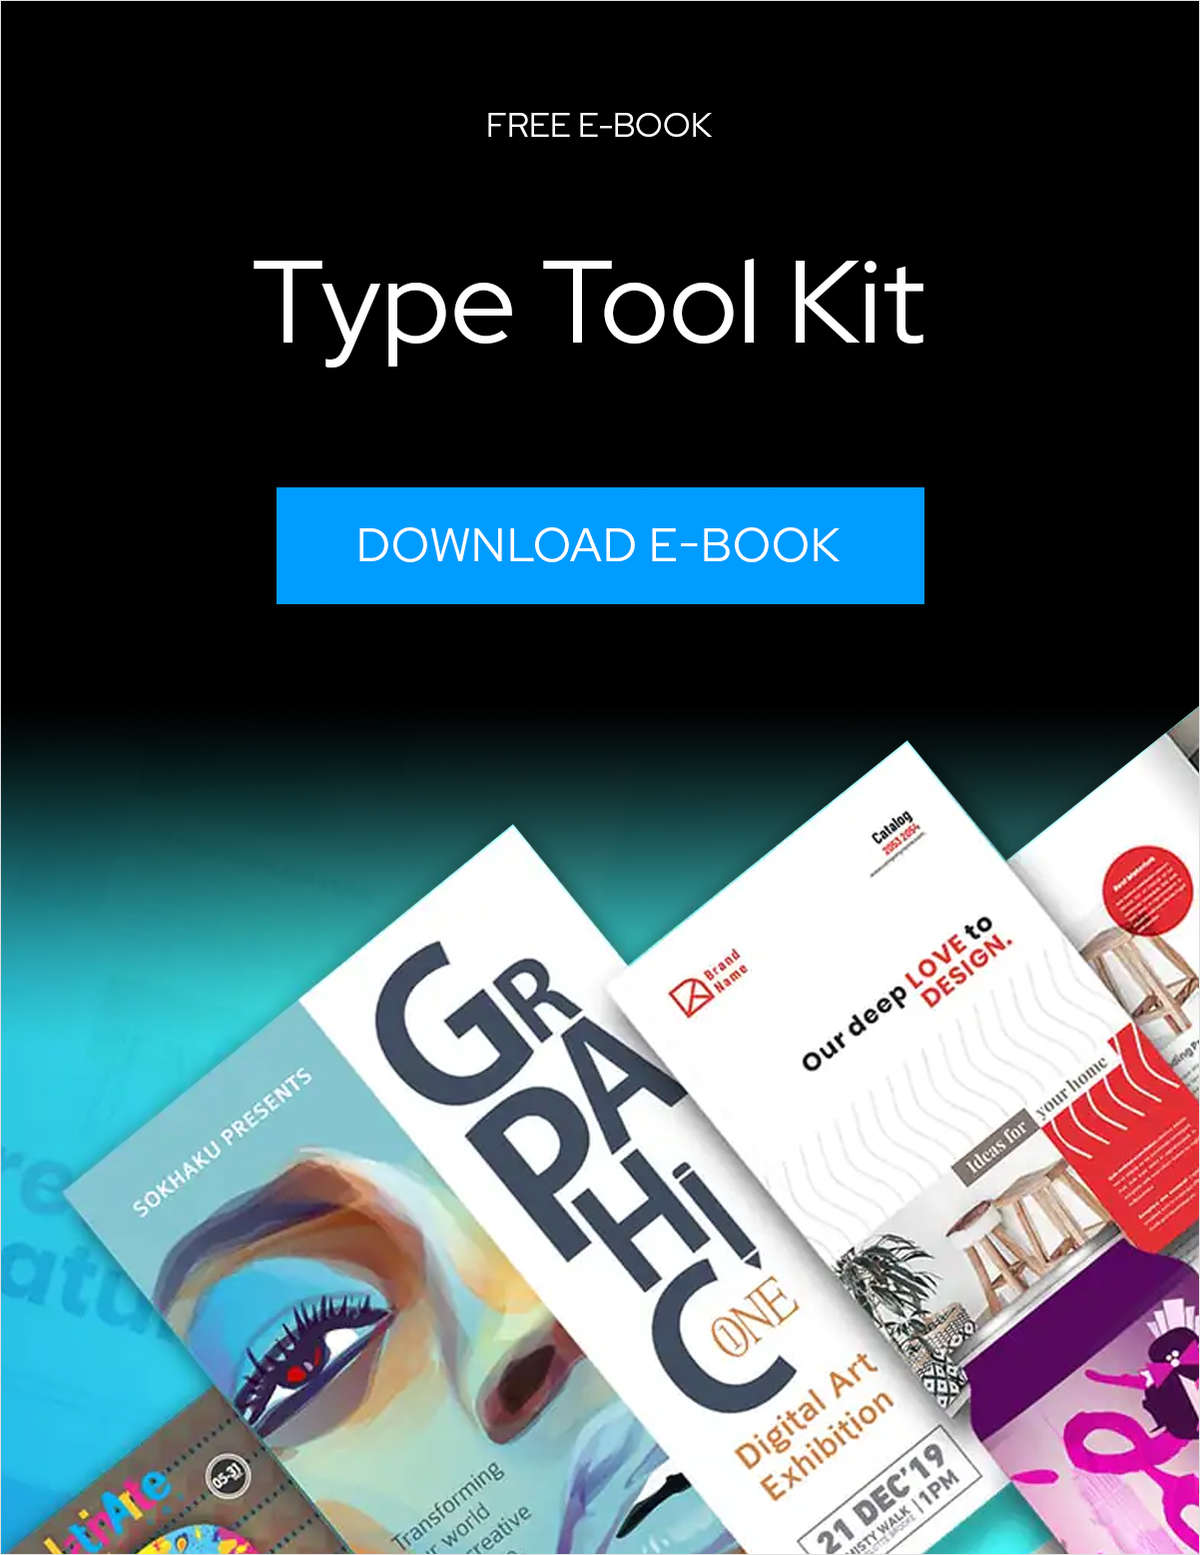 Type Tool Kit